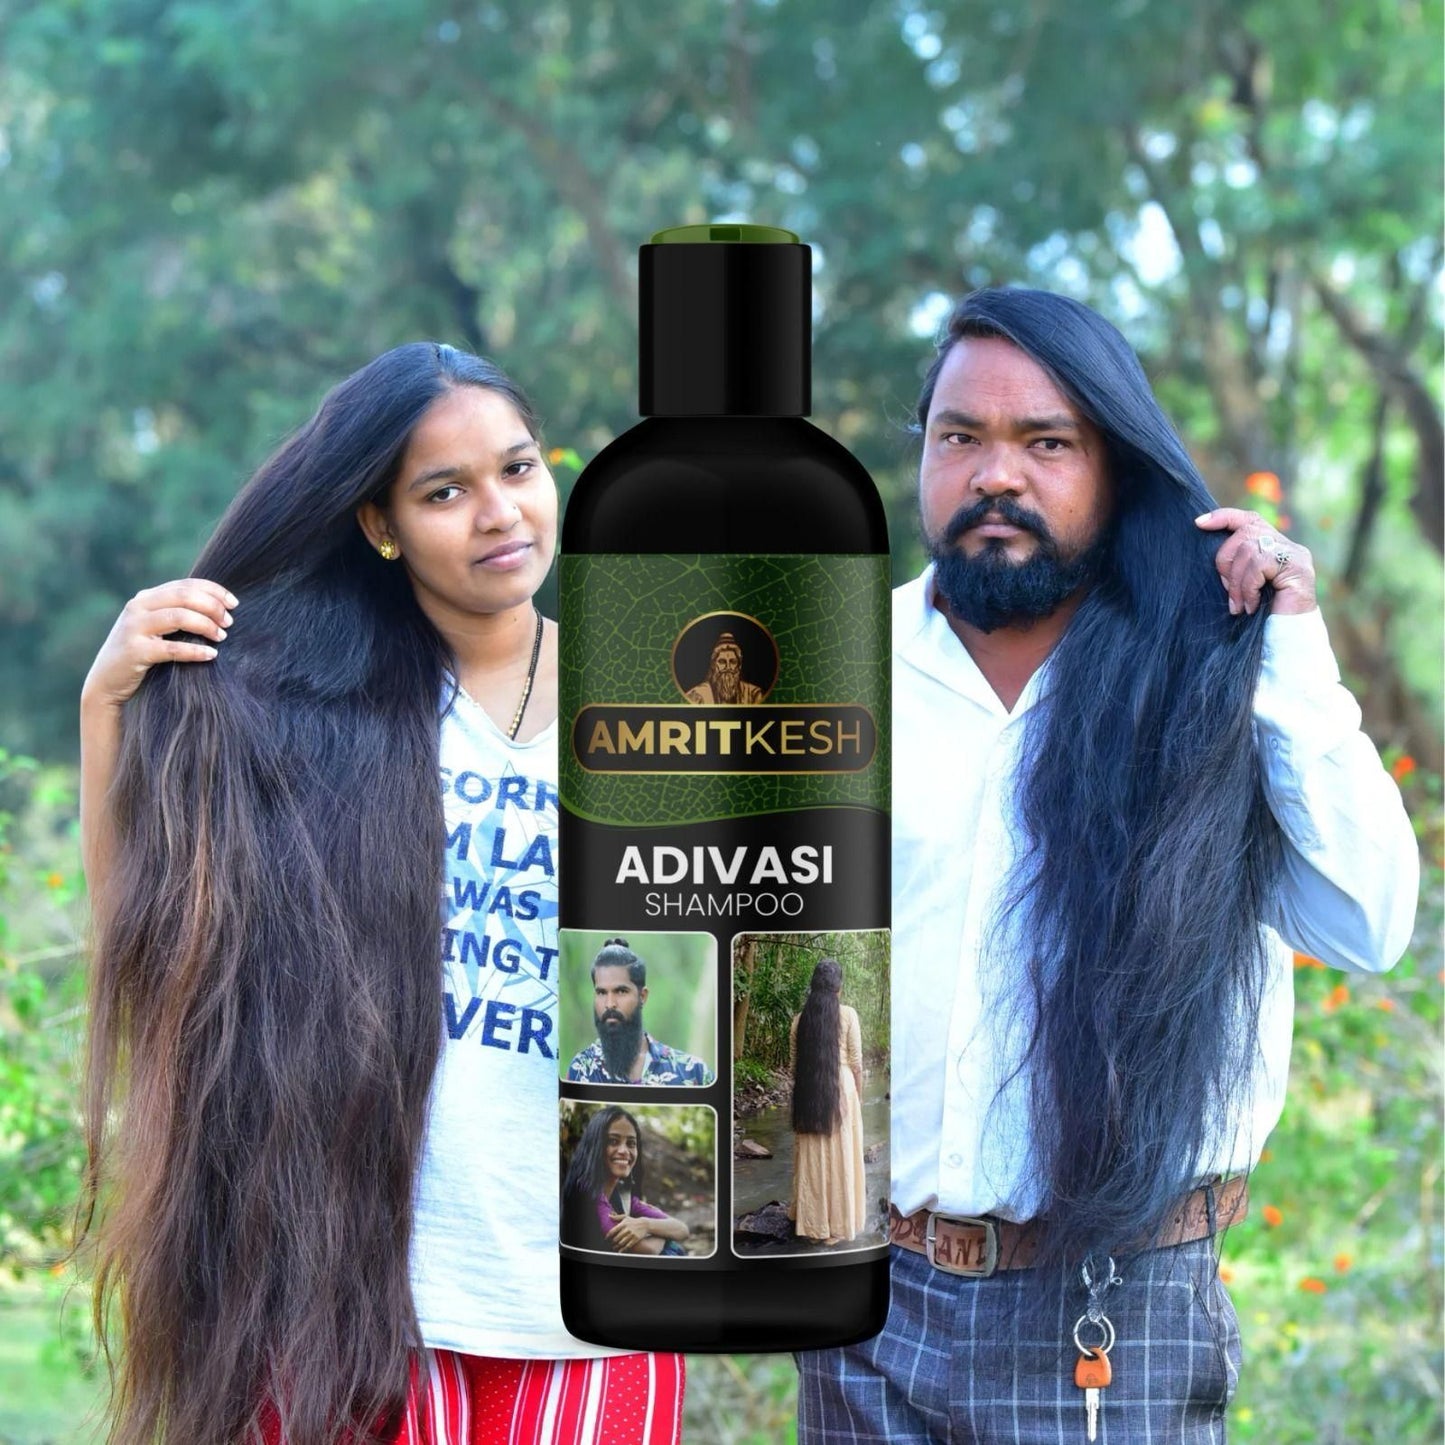 Amritkesh Adivasi Shampoo 100ml - Unleash the Power of Nature (Buy 1 Get 1 Free)